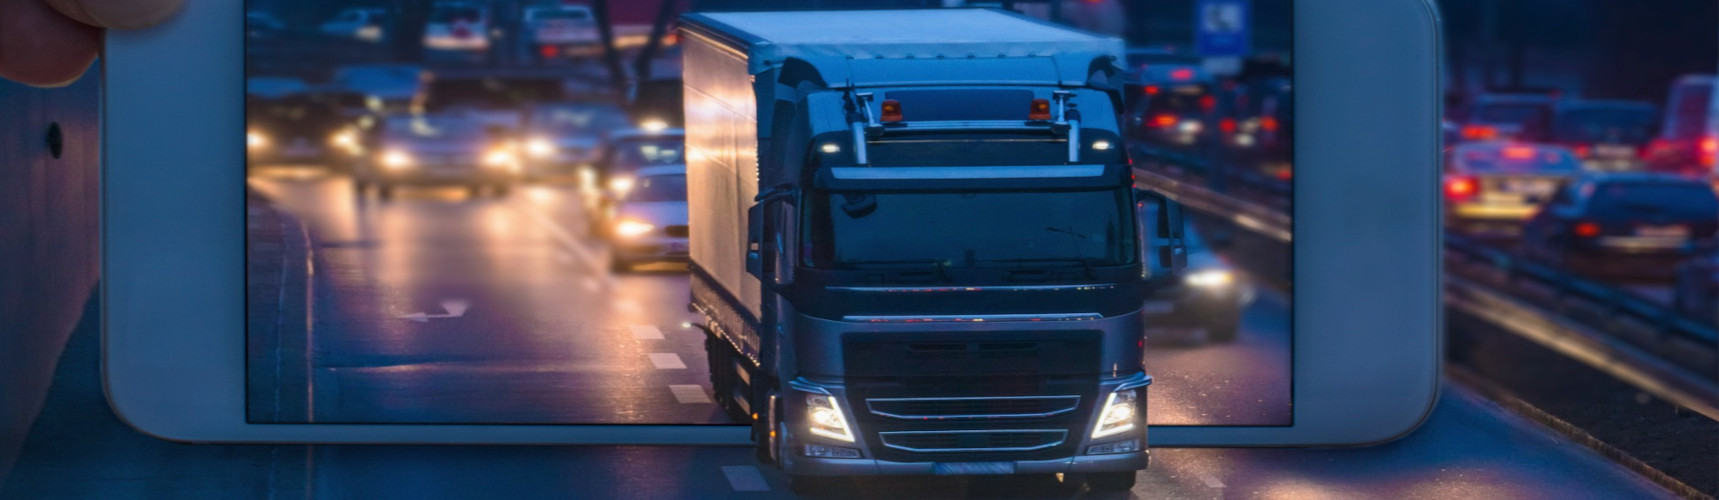 Um caminhão sai de um smartphone e adentra uma rodovia em um fundo urbano e a noite.